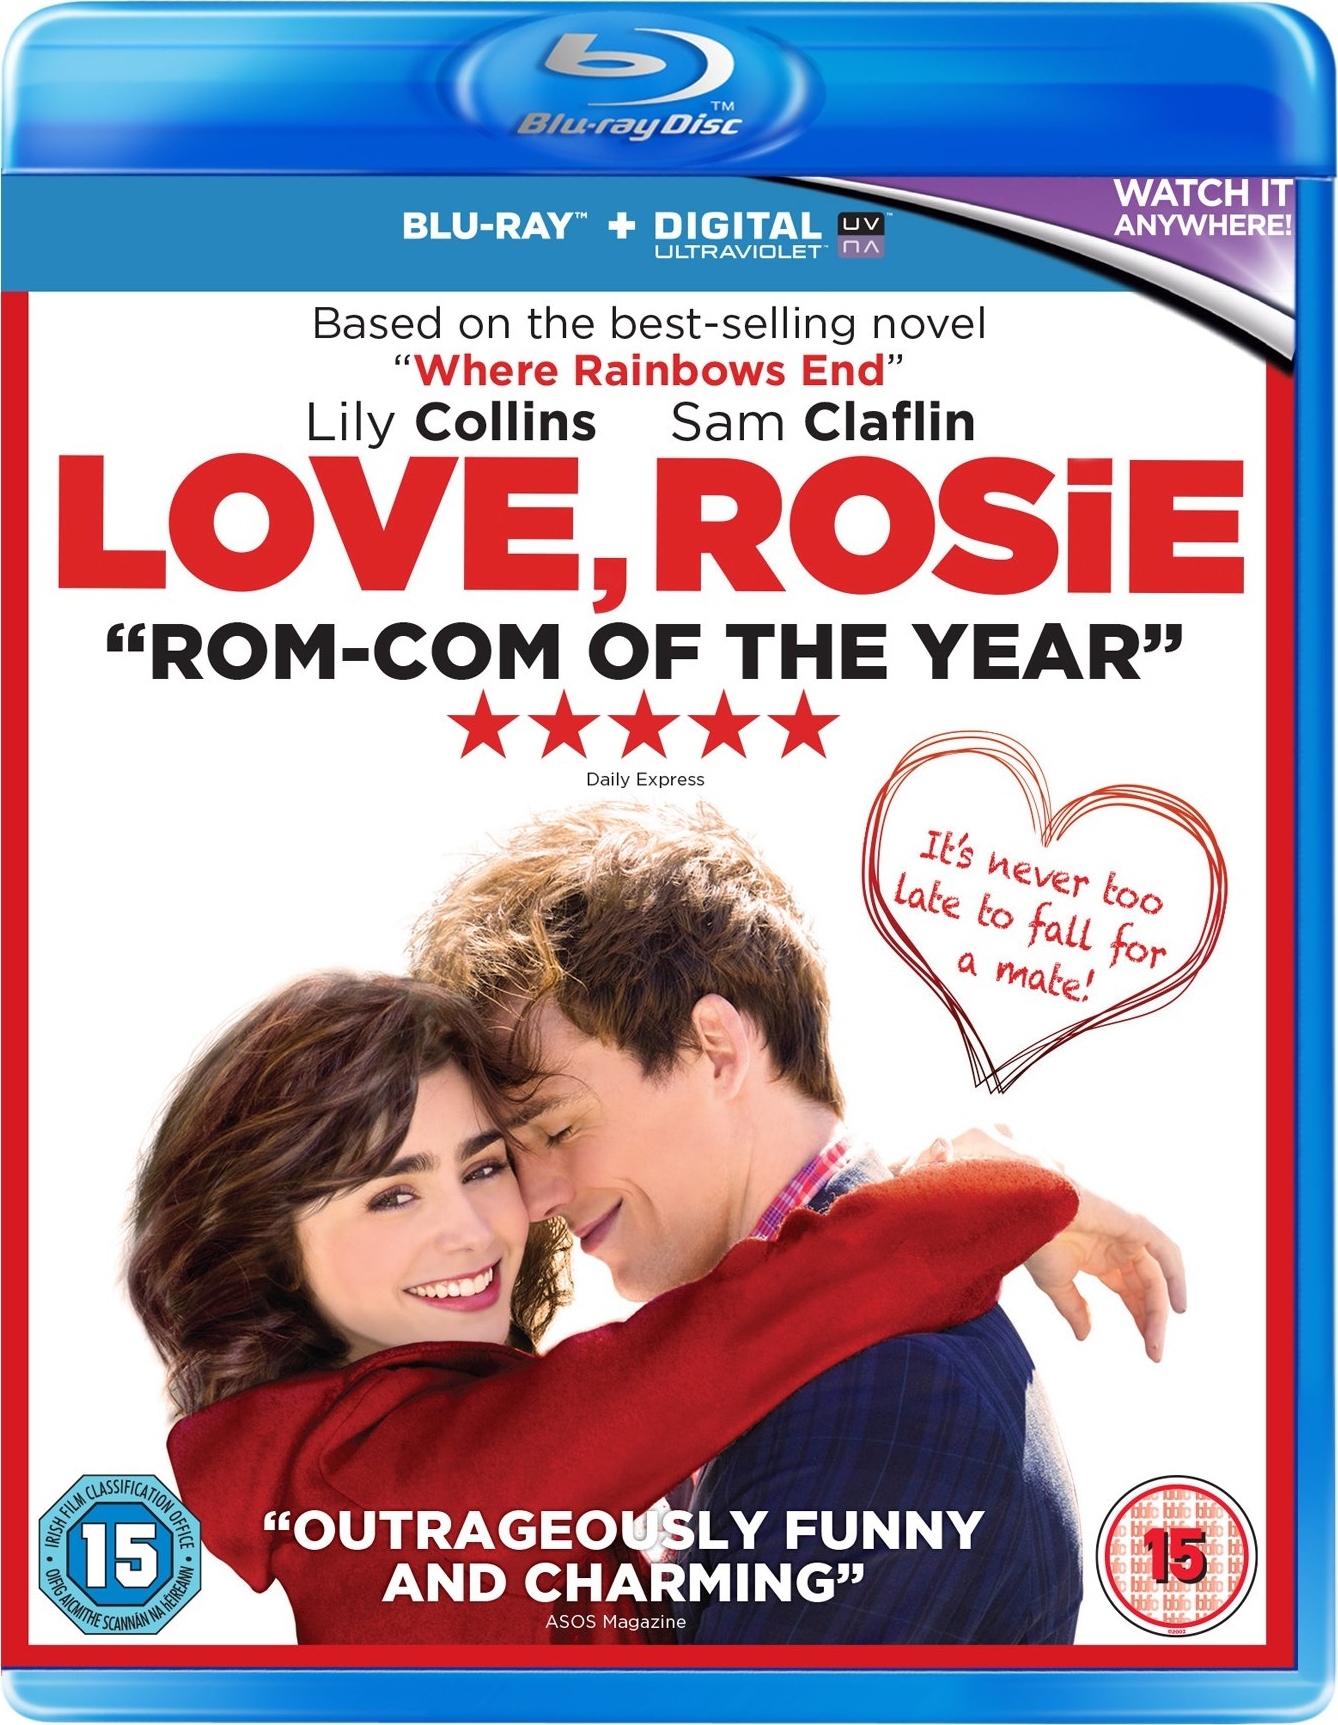 Название истории любви. С любовью Рози. Love Rosie Blu ray. С любовью Рози Блю Рей.